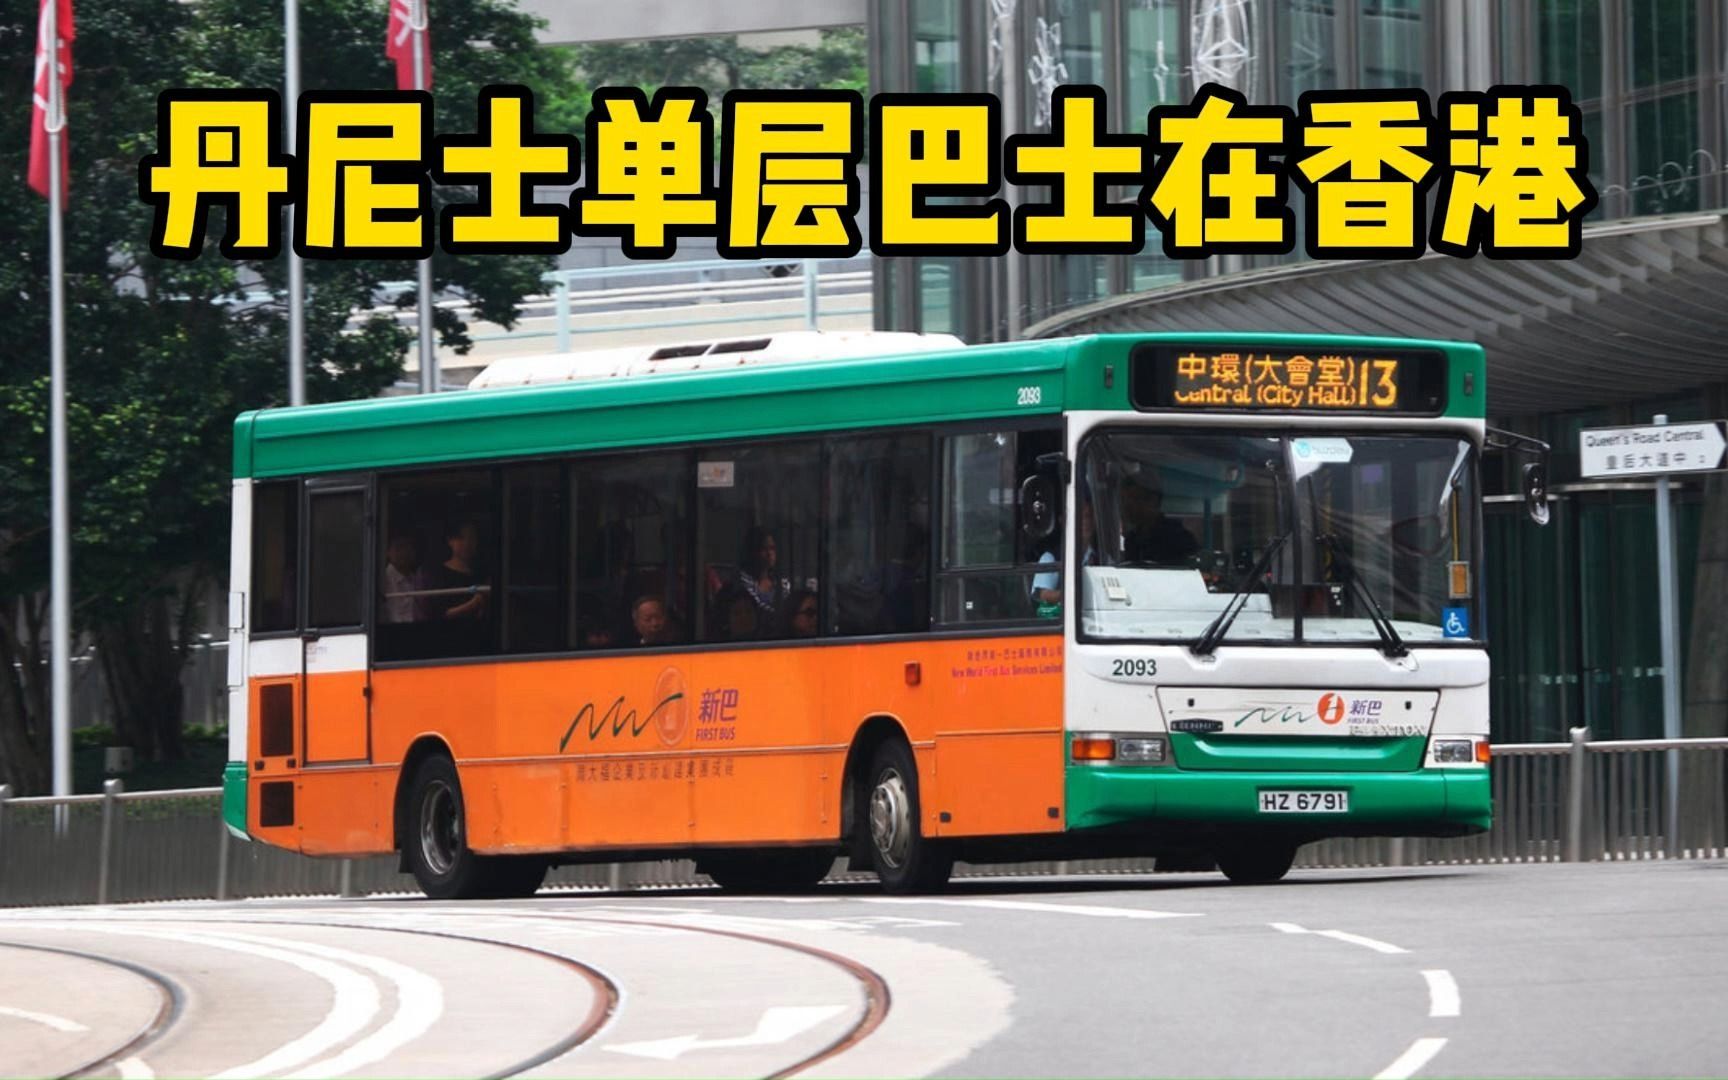 不少车迷去香港都要拍的丹尼士单层巴士【香港专营巴士车型4】